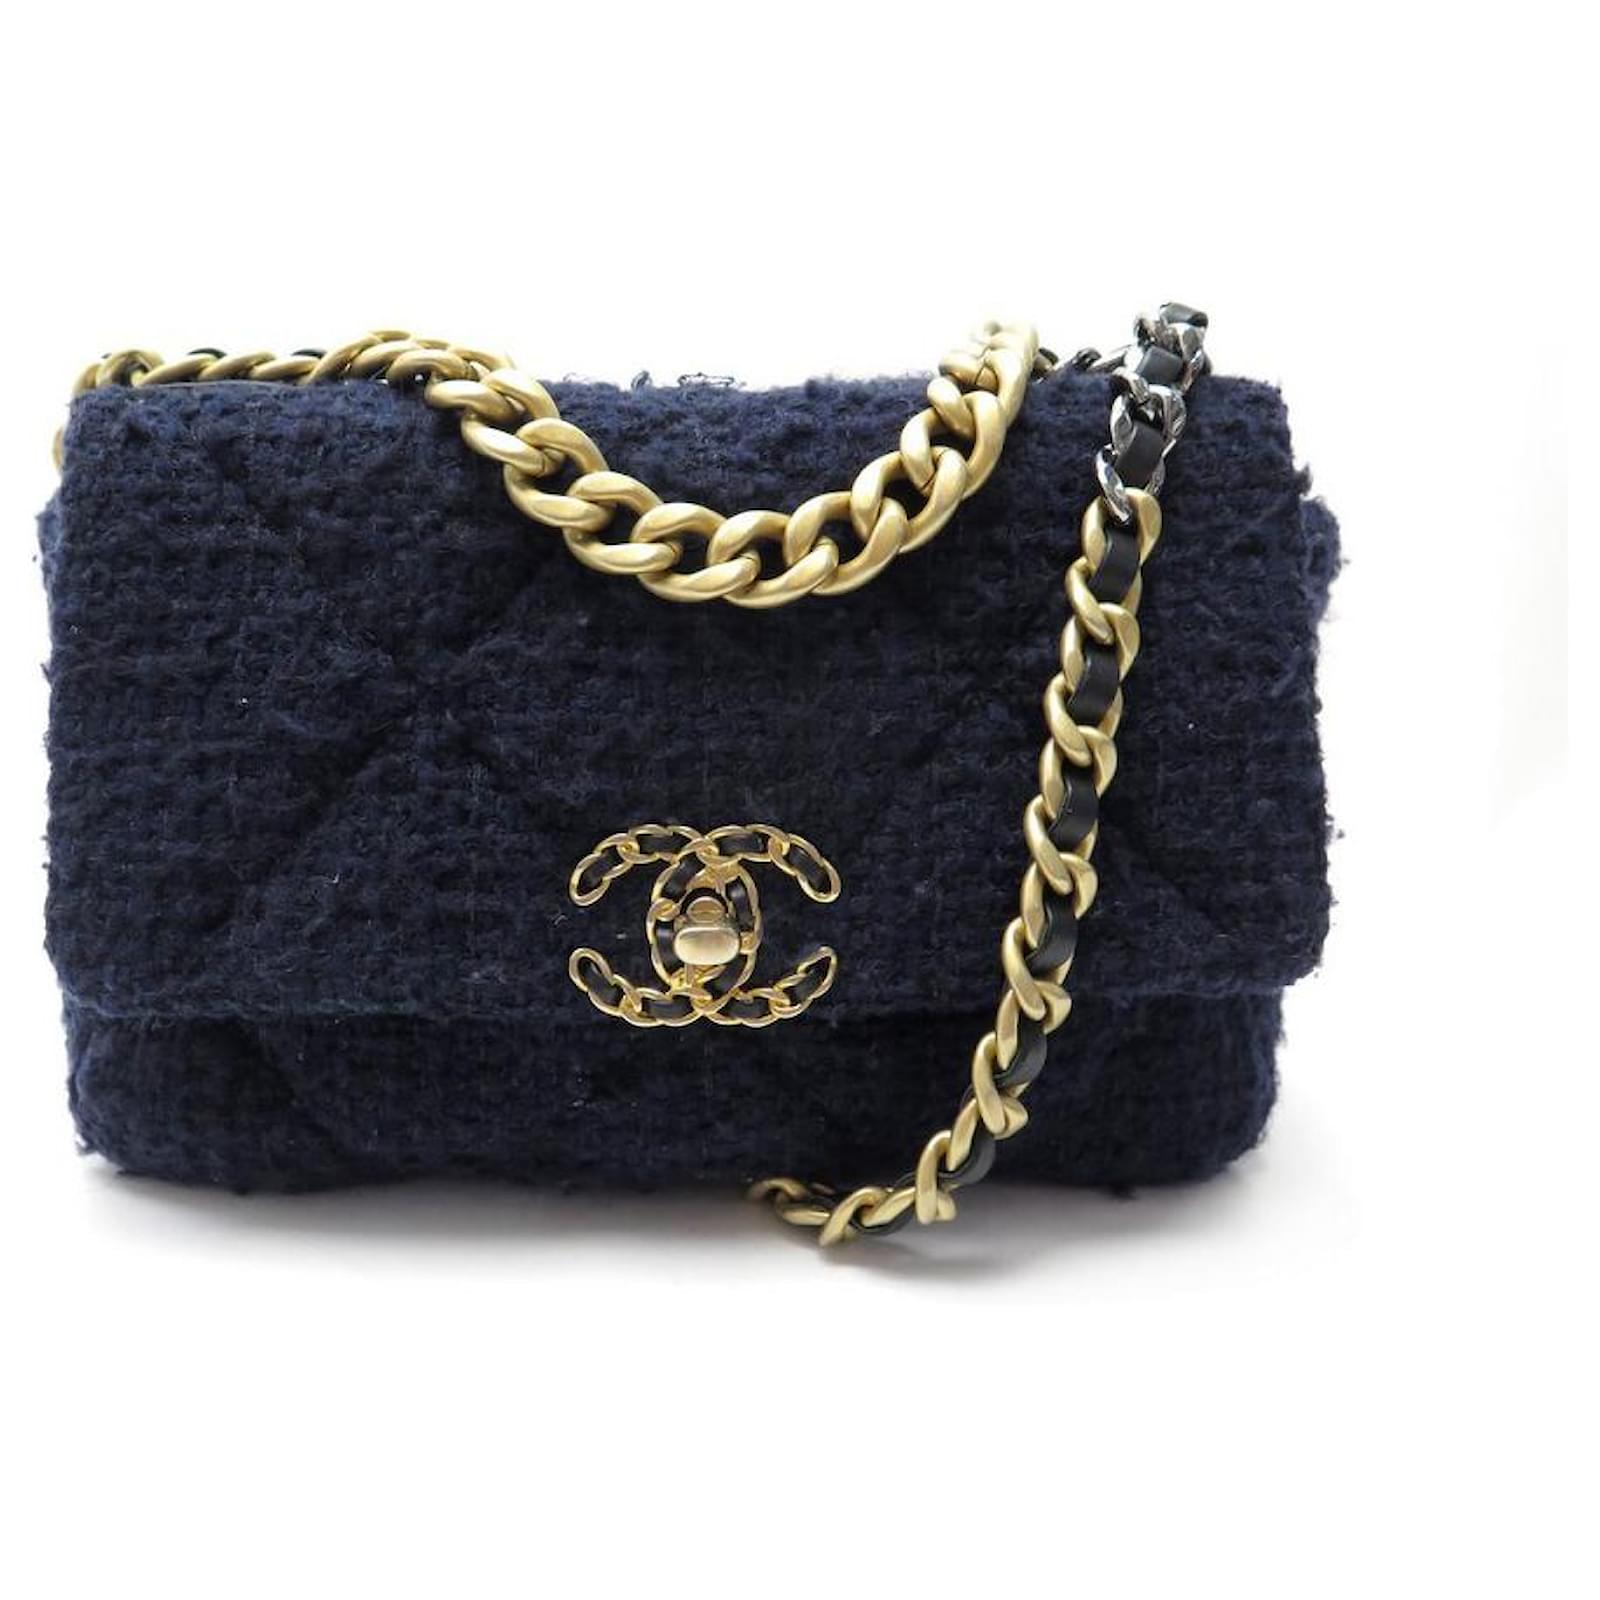 CHANEL, Bags, Tweed Chanel Handbag Navy